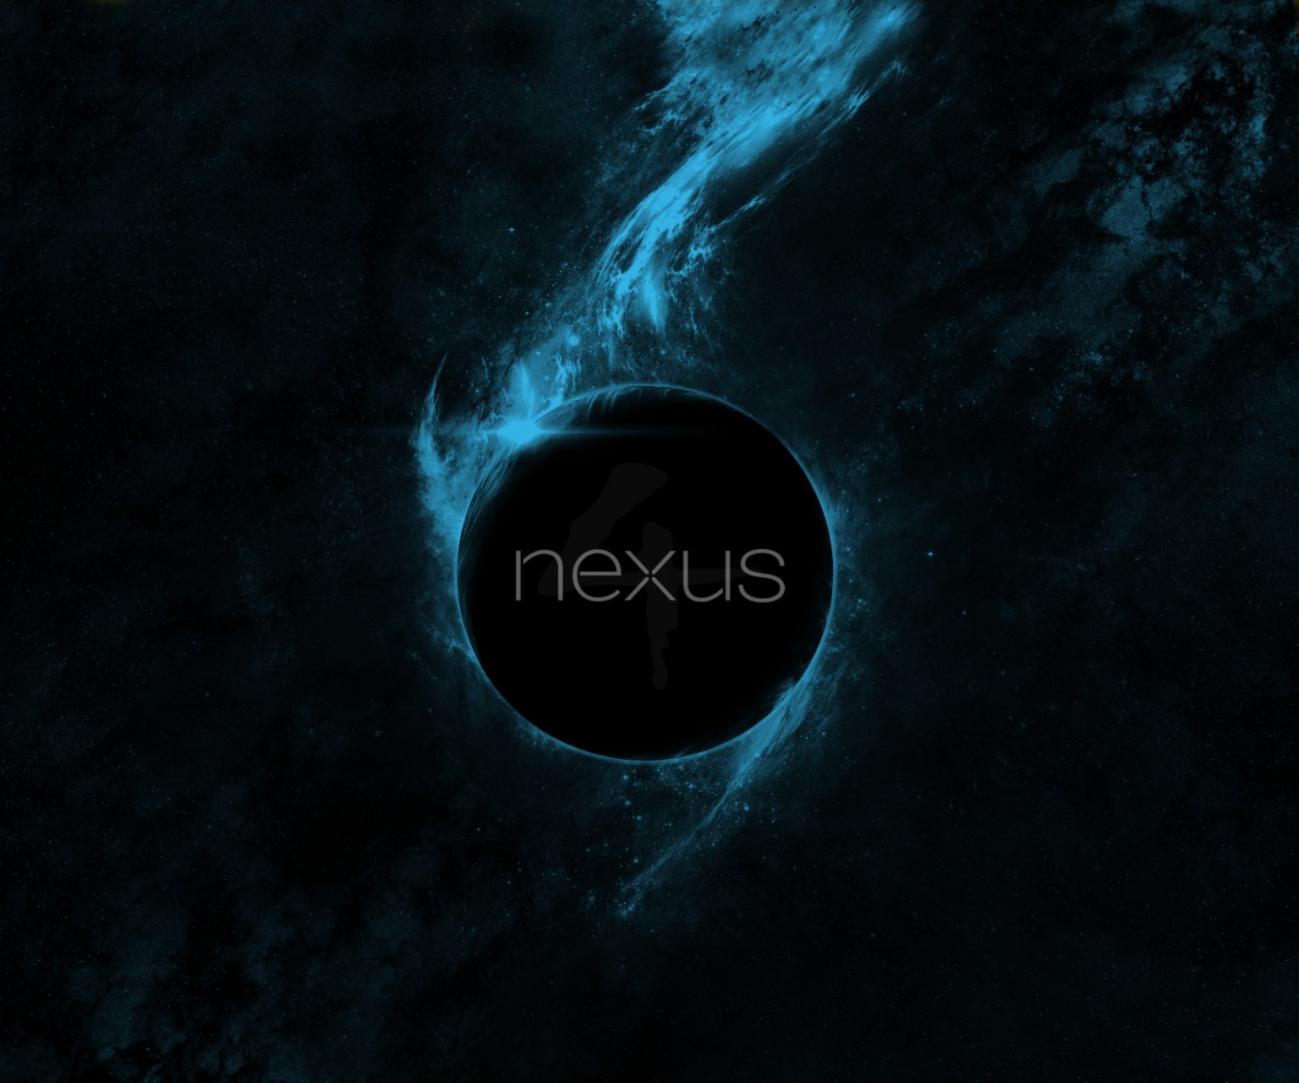 nexus 7 wallpaper 1080p